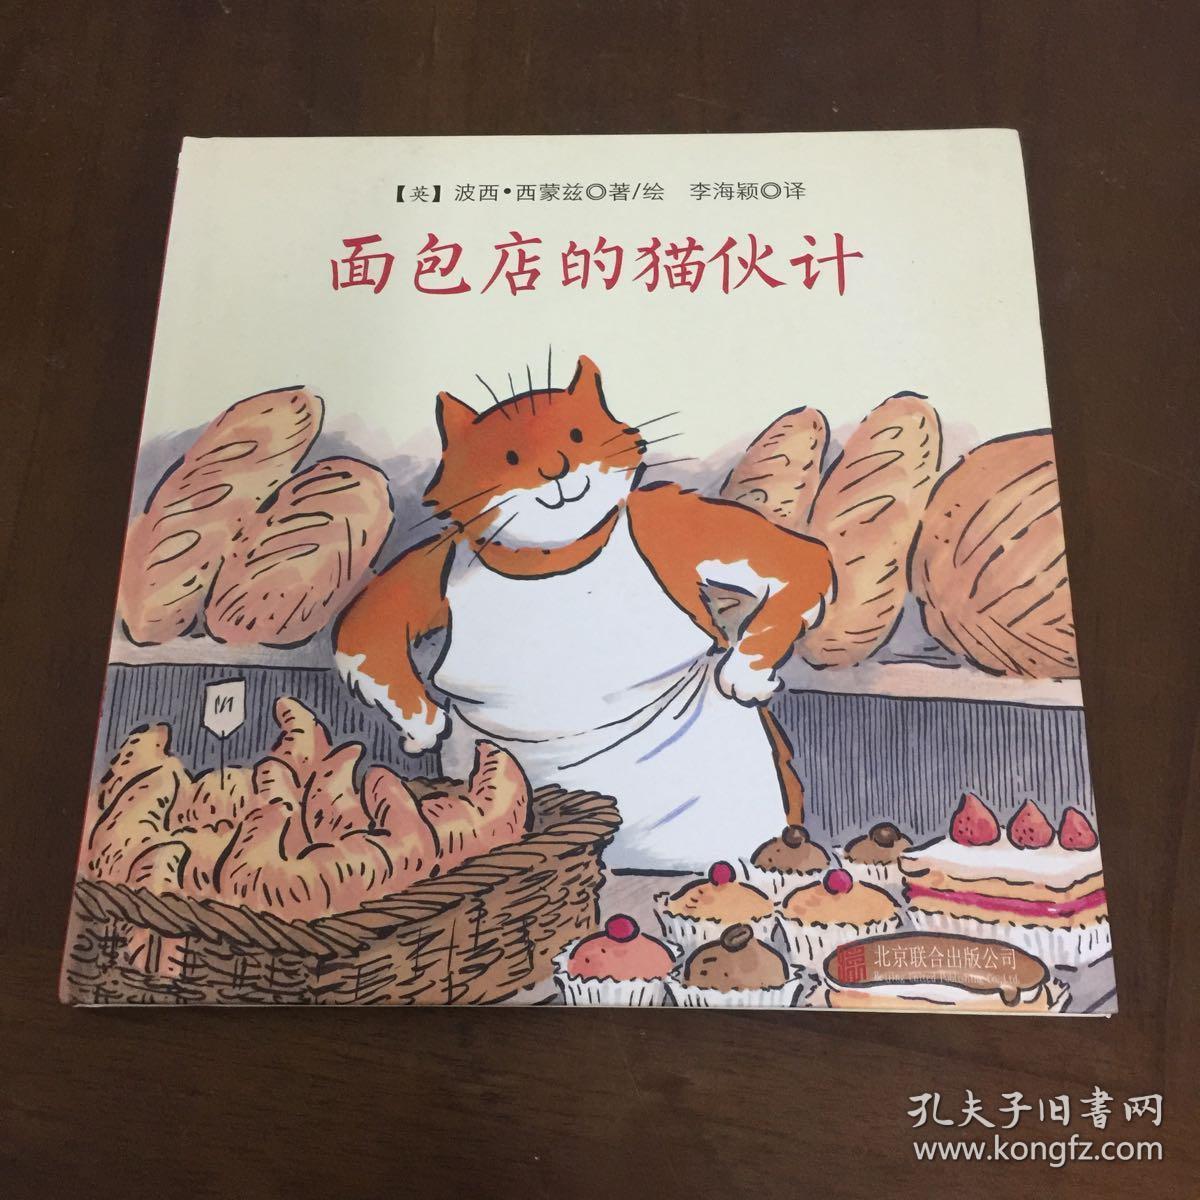 国际绘本大师经典面包店的猫伙计儿童绘本图书,颠覆性